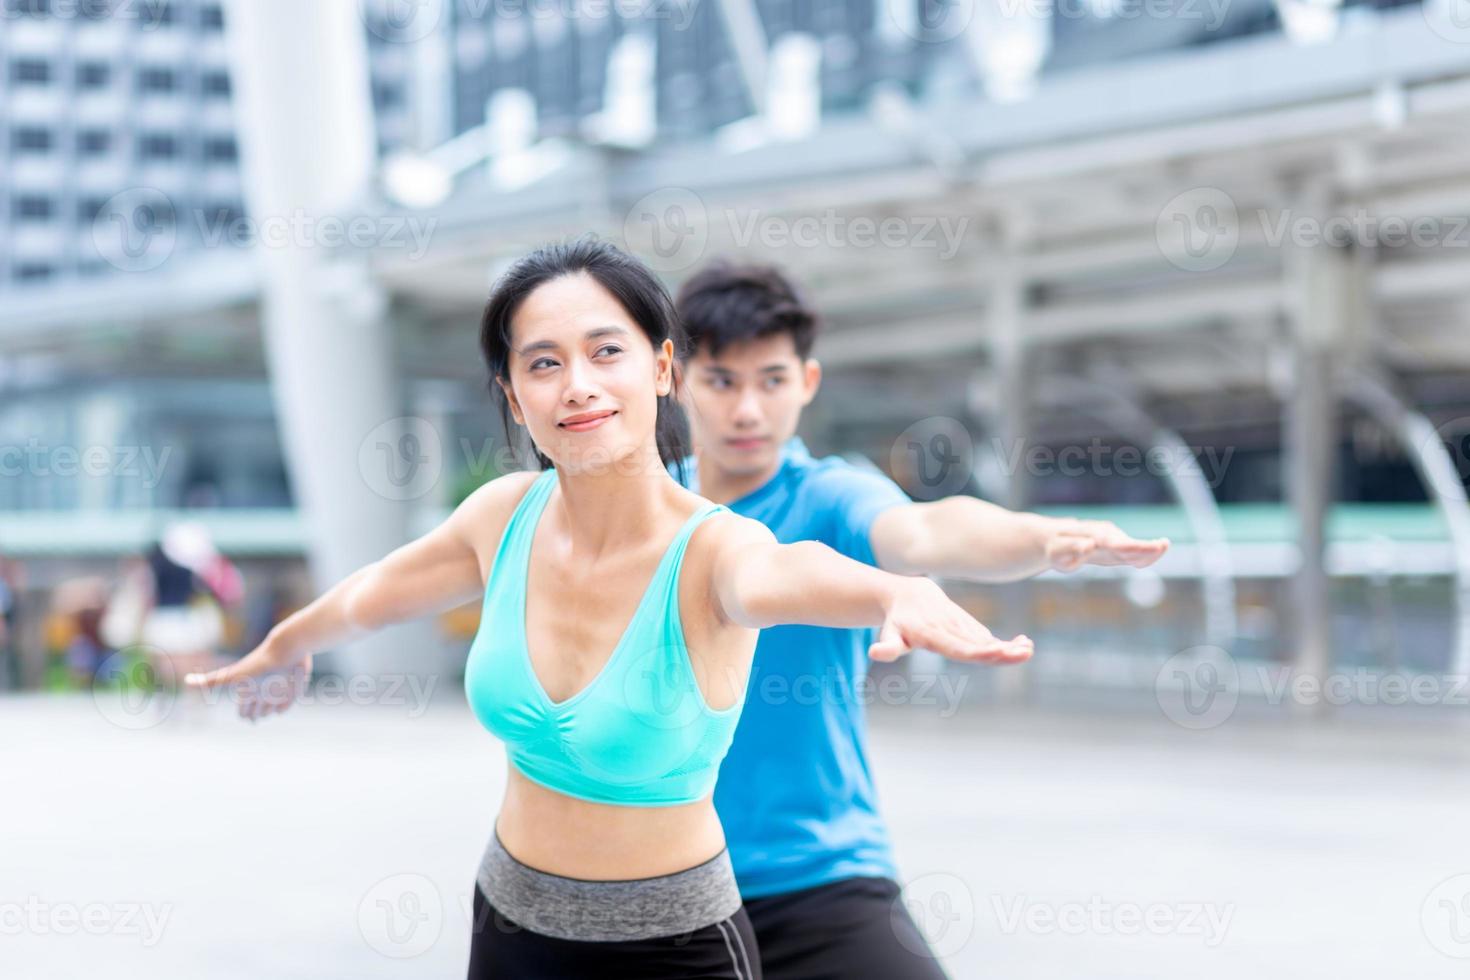 homme et femme en bonne santé exercice de yoga pour se détendre cours de yoga santé exercice sportif avec moment heureux et équilibre fit bidy sur tapis de yoga fitness photo